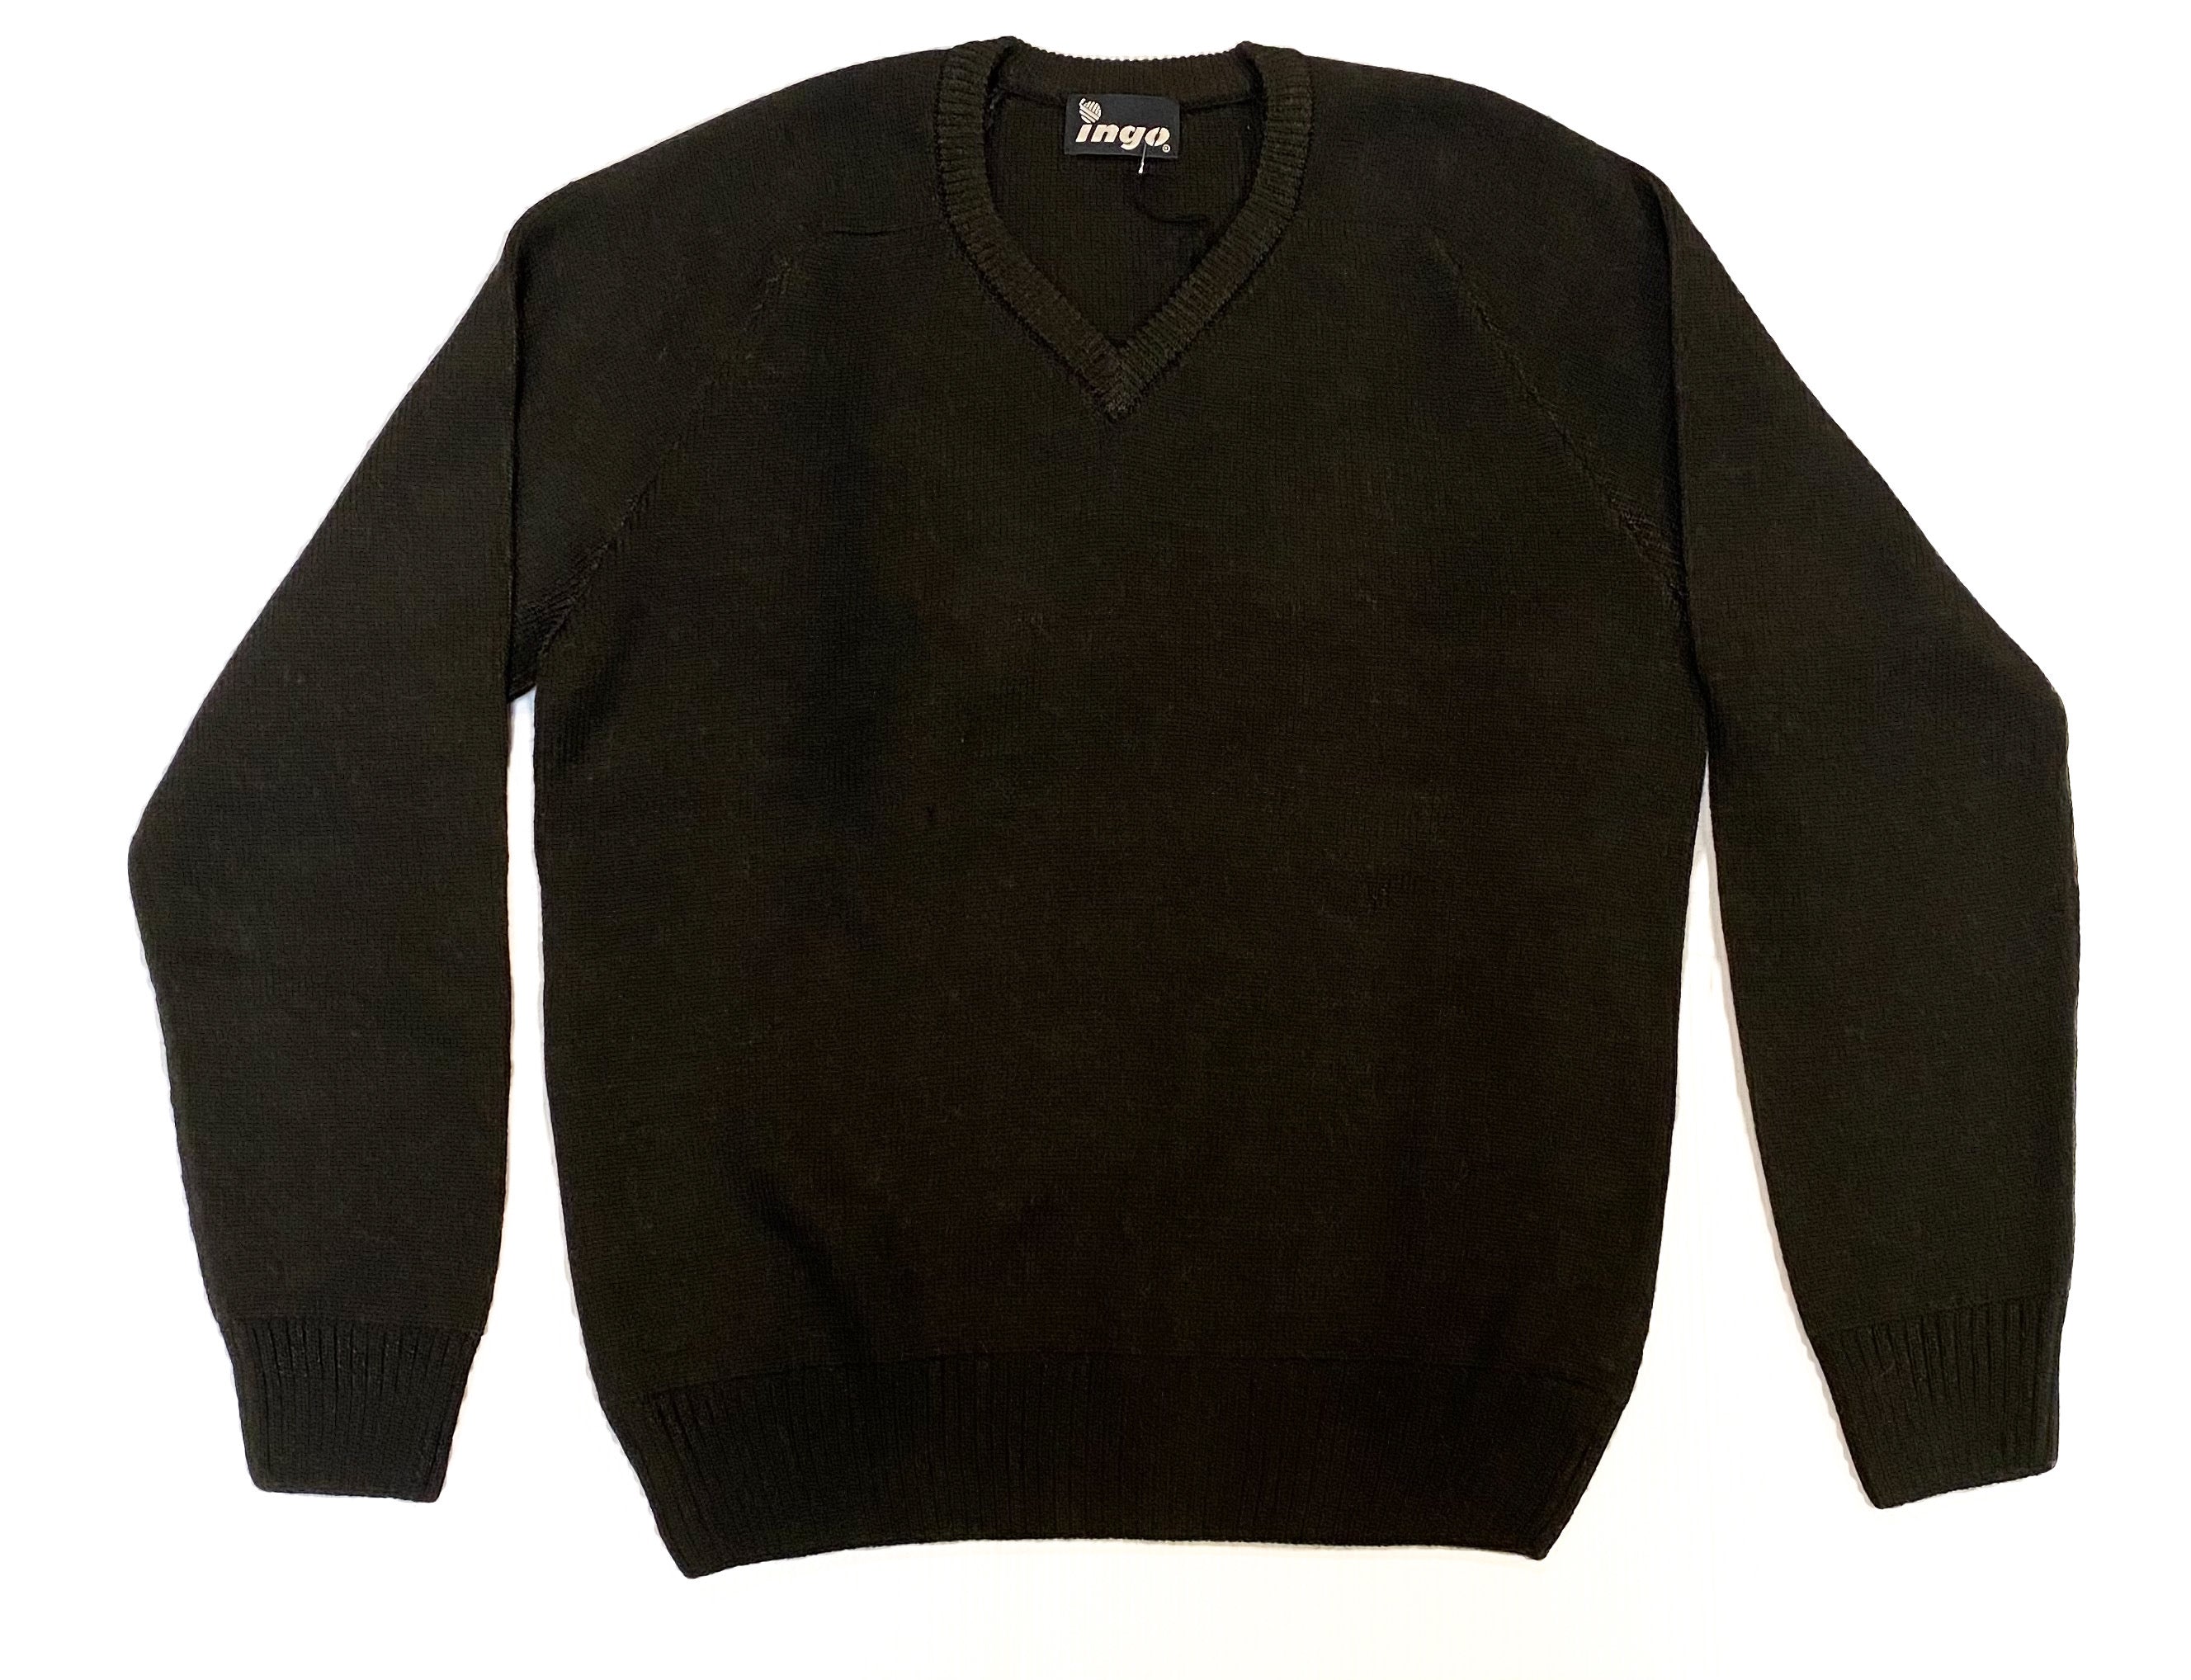 Ingo - Cuno V-Neck Sweater in Black.